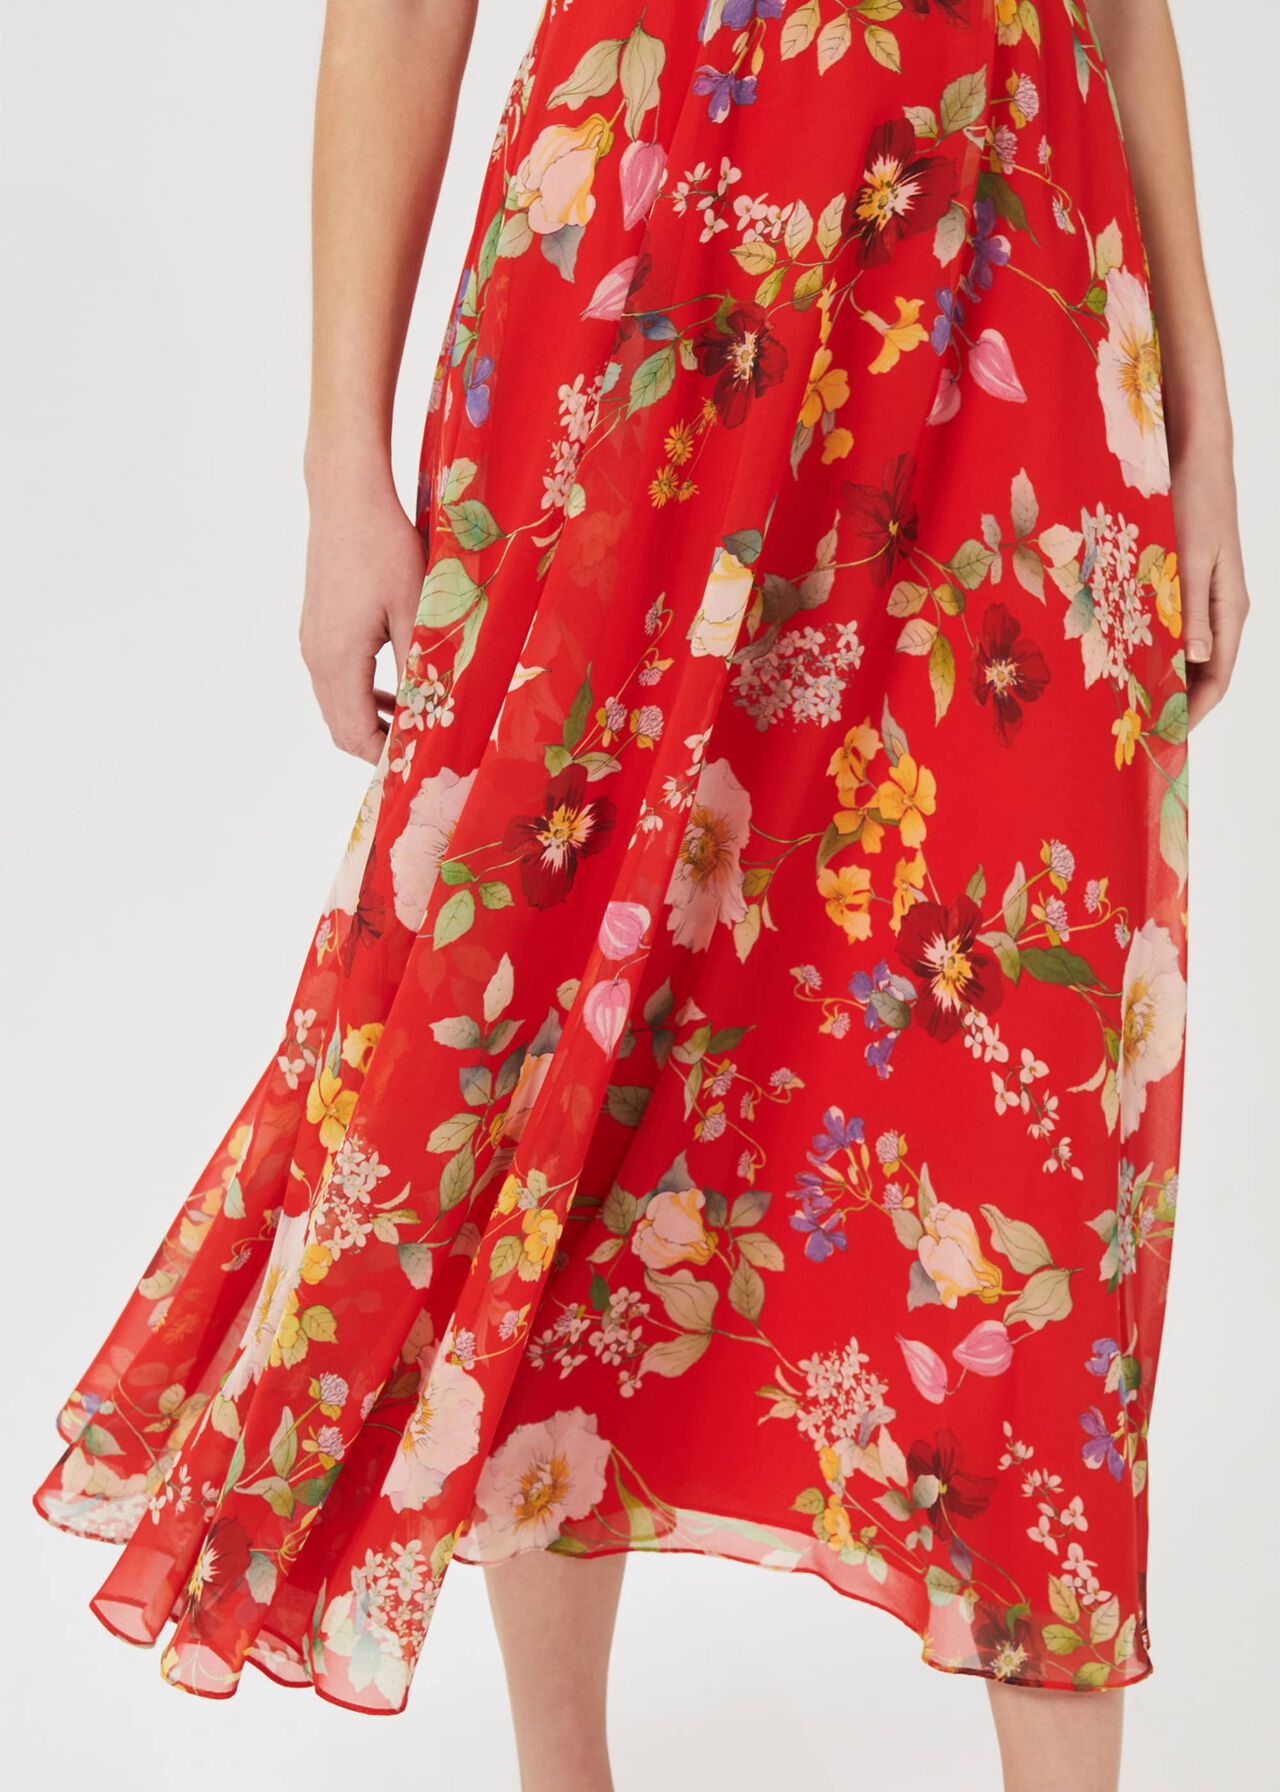 Sarah Floral Midi Dress, Flame Red, hi-res